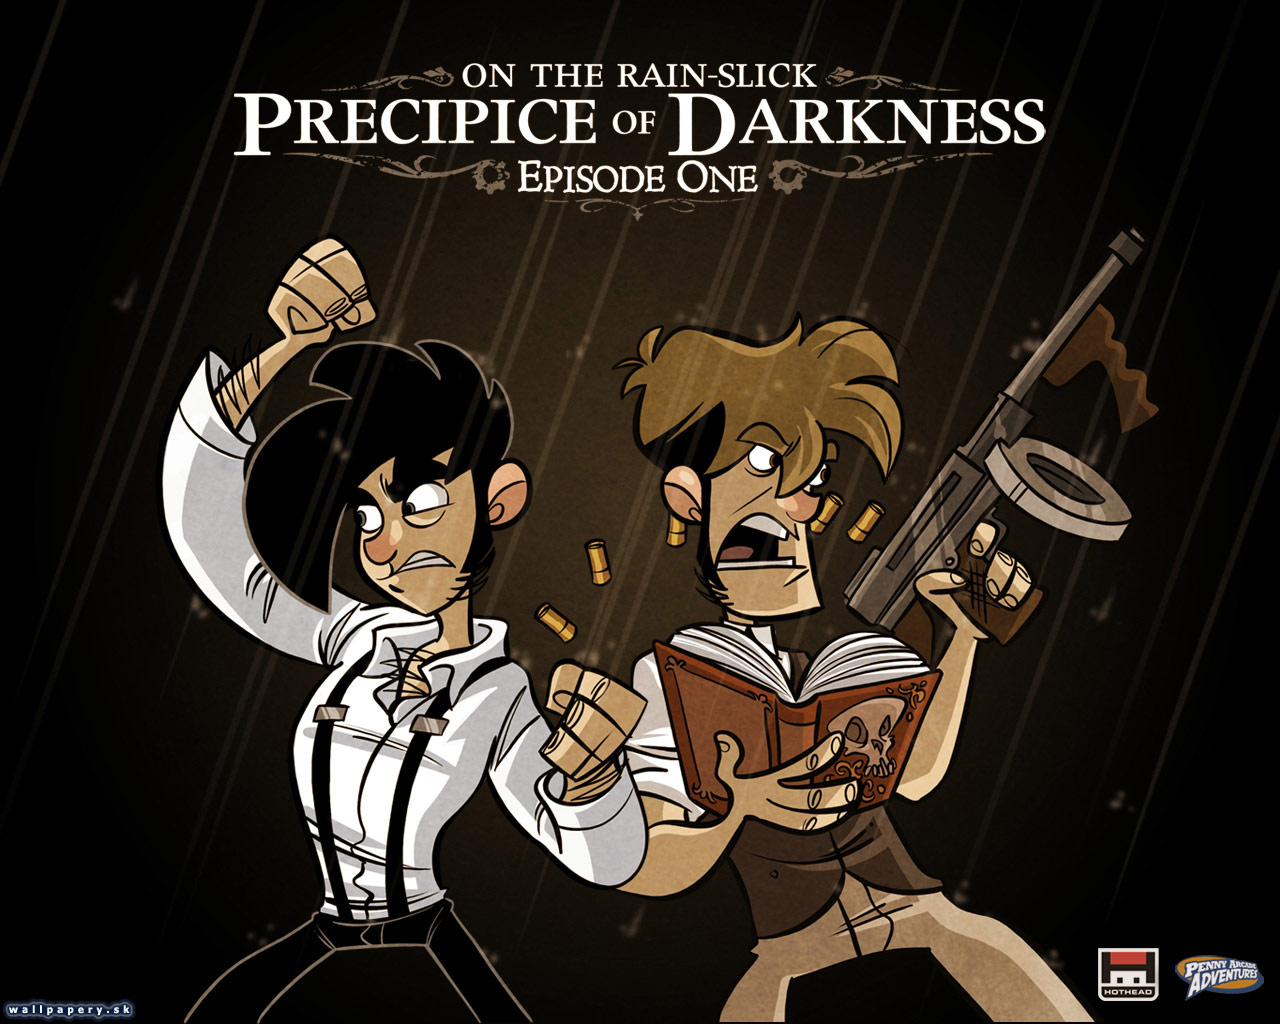 On The Rain-Slick: Precipice of Darkness - Episode One - wallpaper 2